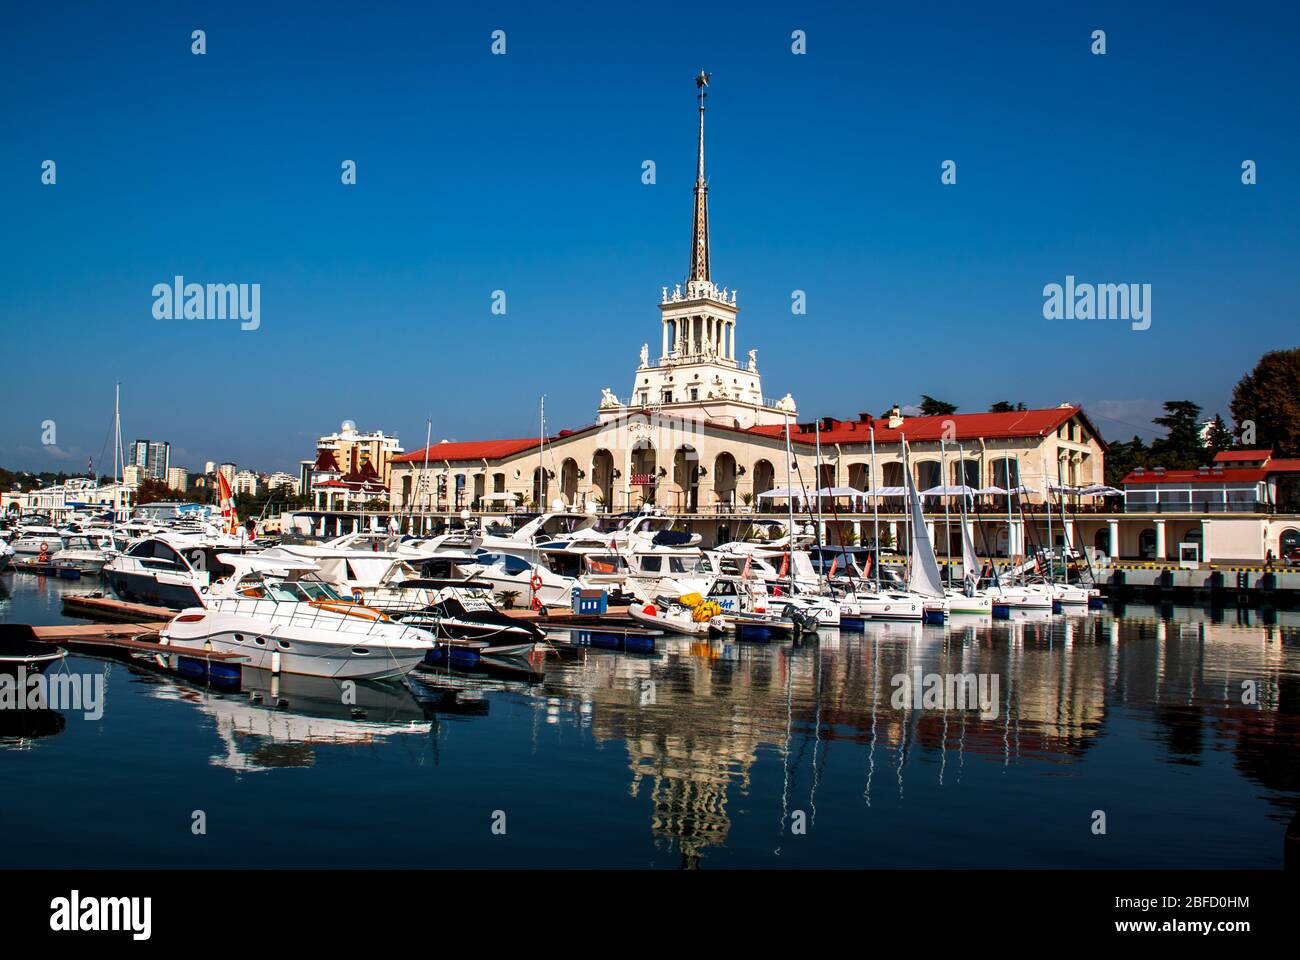 Sotschi / Russland - November 04 2014: Marine Station Gebäude und Yachten, Boote im Hafen von Sotschi verankert. Russland. Stockfoto